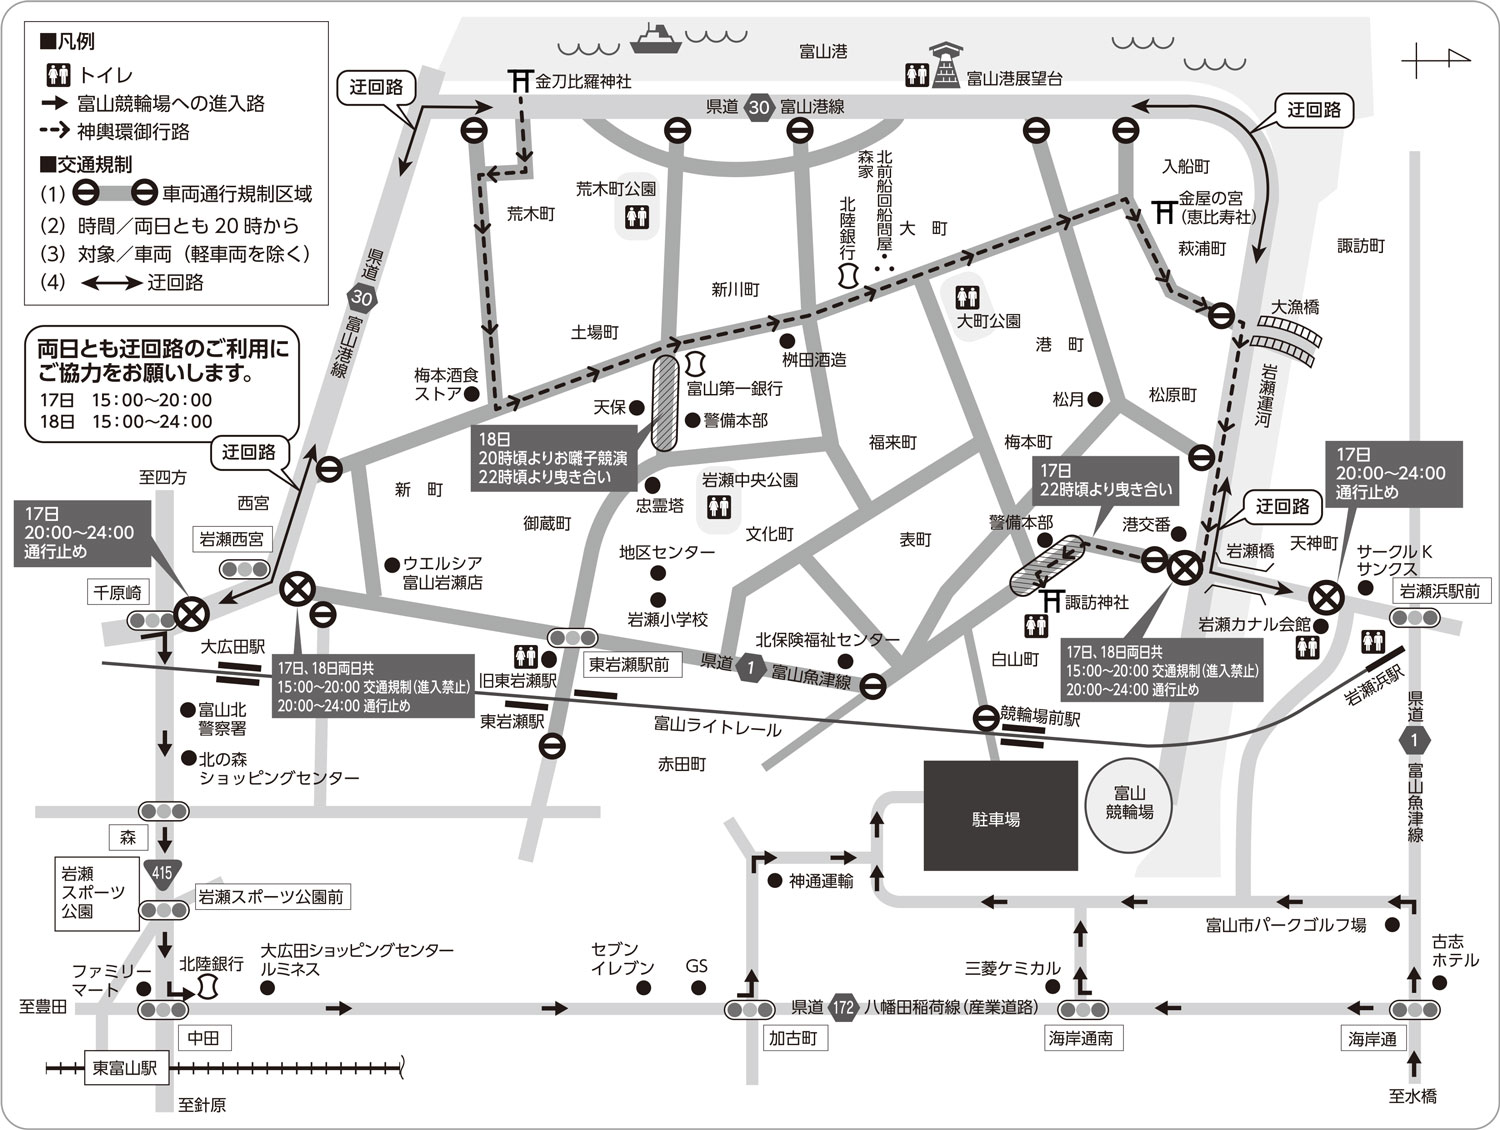 岩瀬曳山車祭の曳き回しルートと交通規制情報マップ2022年